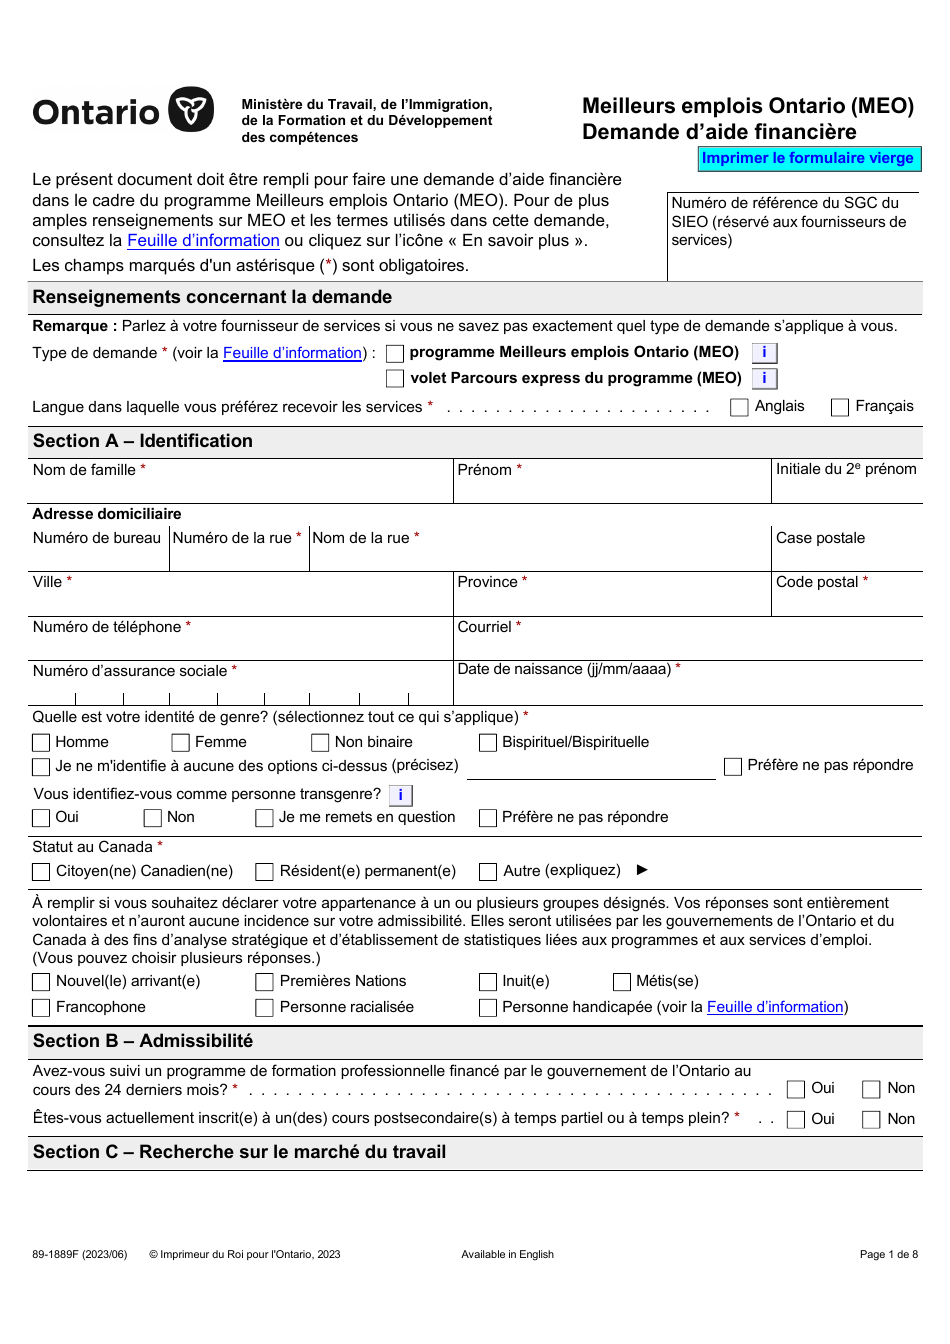 Forme 89-1889F Meilleurs Emplois Ontario (Meo) Demande Daide Financiere - Ontario, Canada (French), Page 1